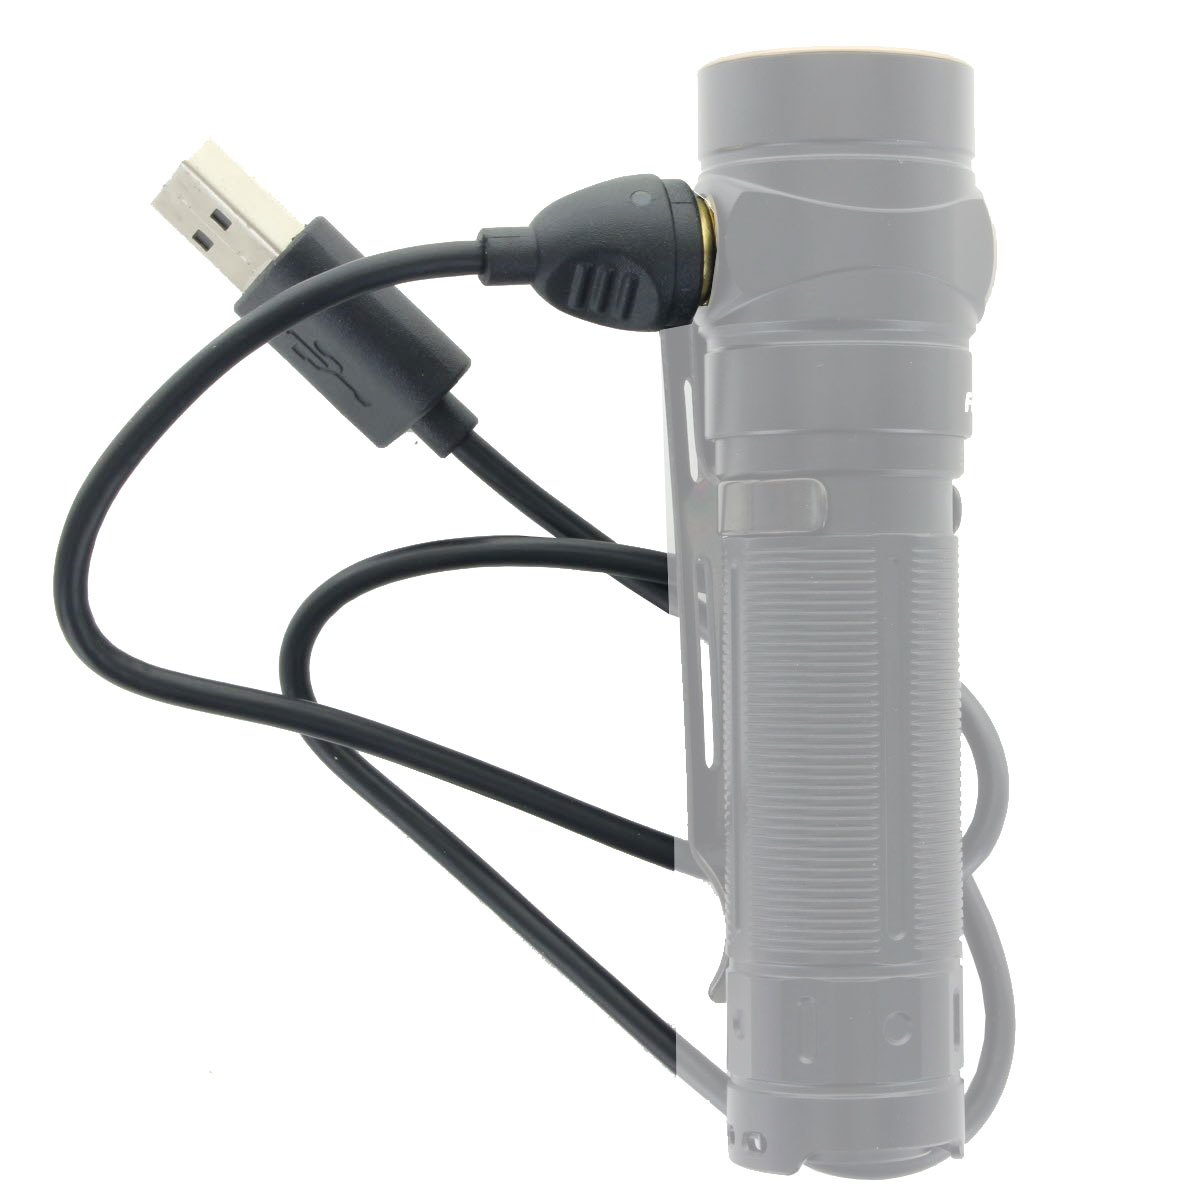 USB Magnet Ladekabel exakt passend für die Fenix E18R und E30R LED Taschenlampe